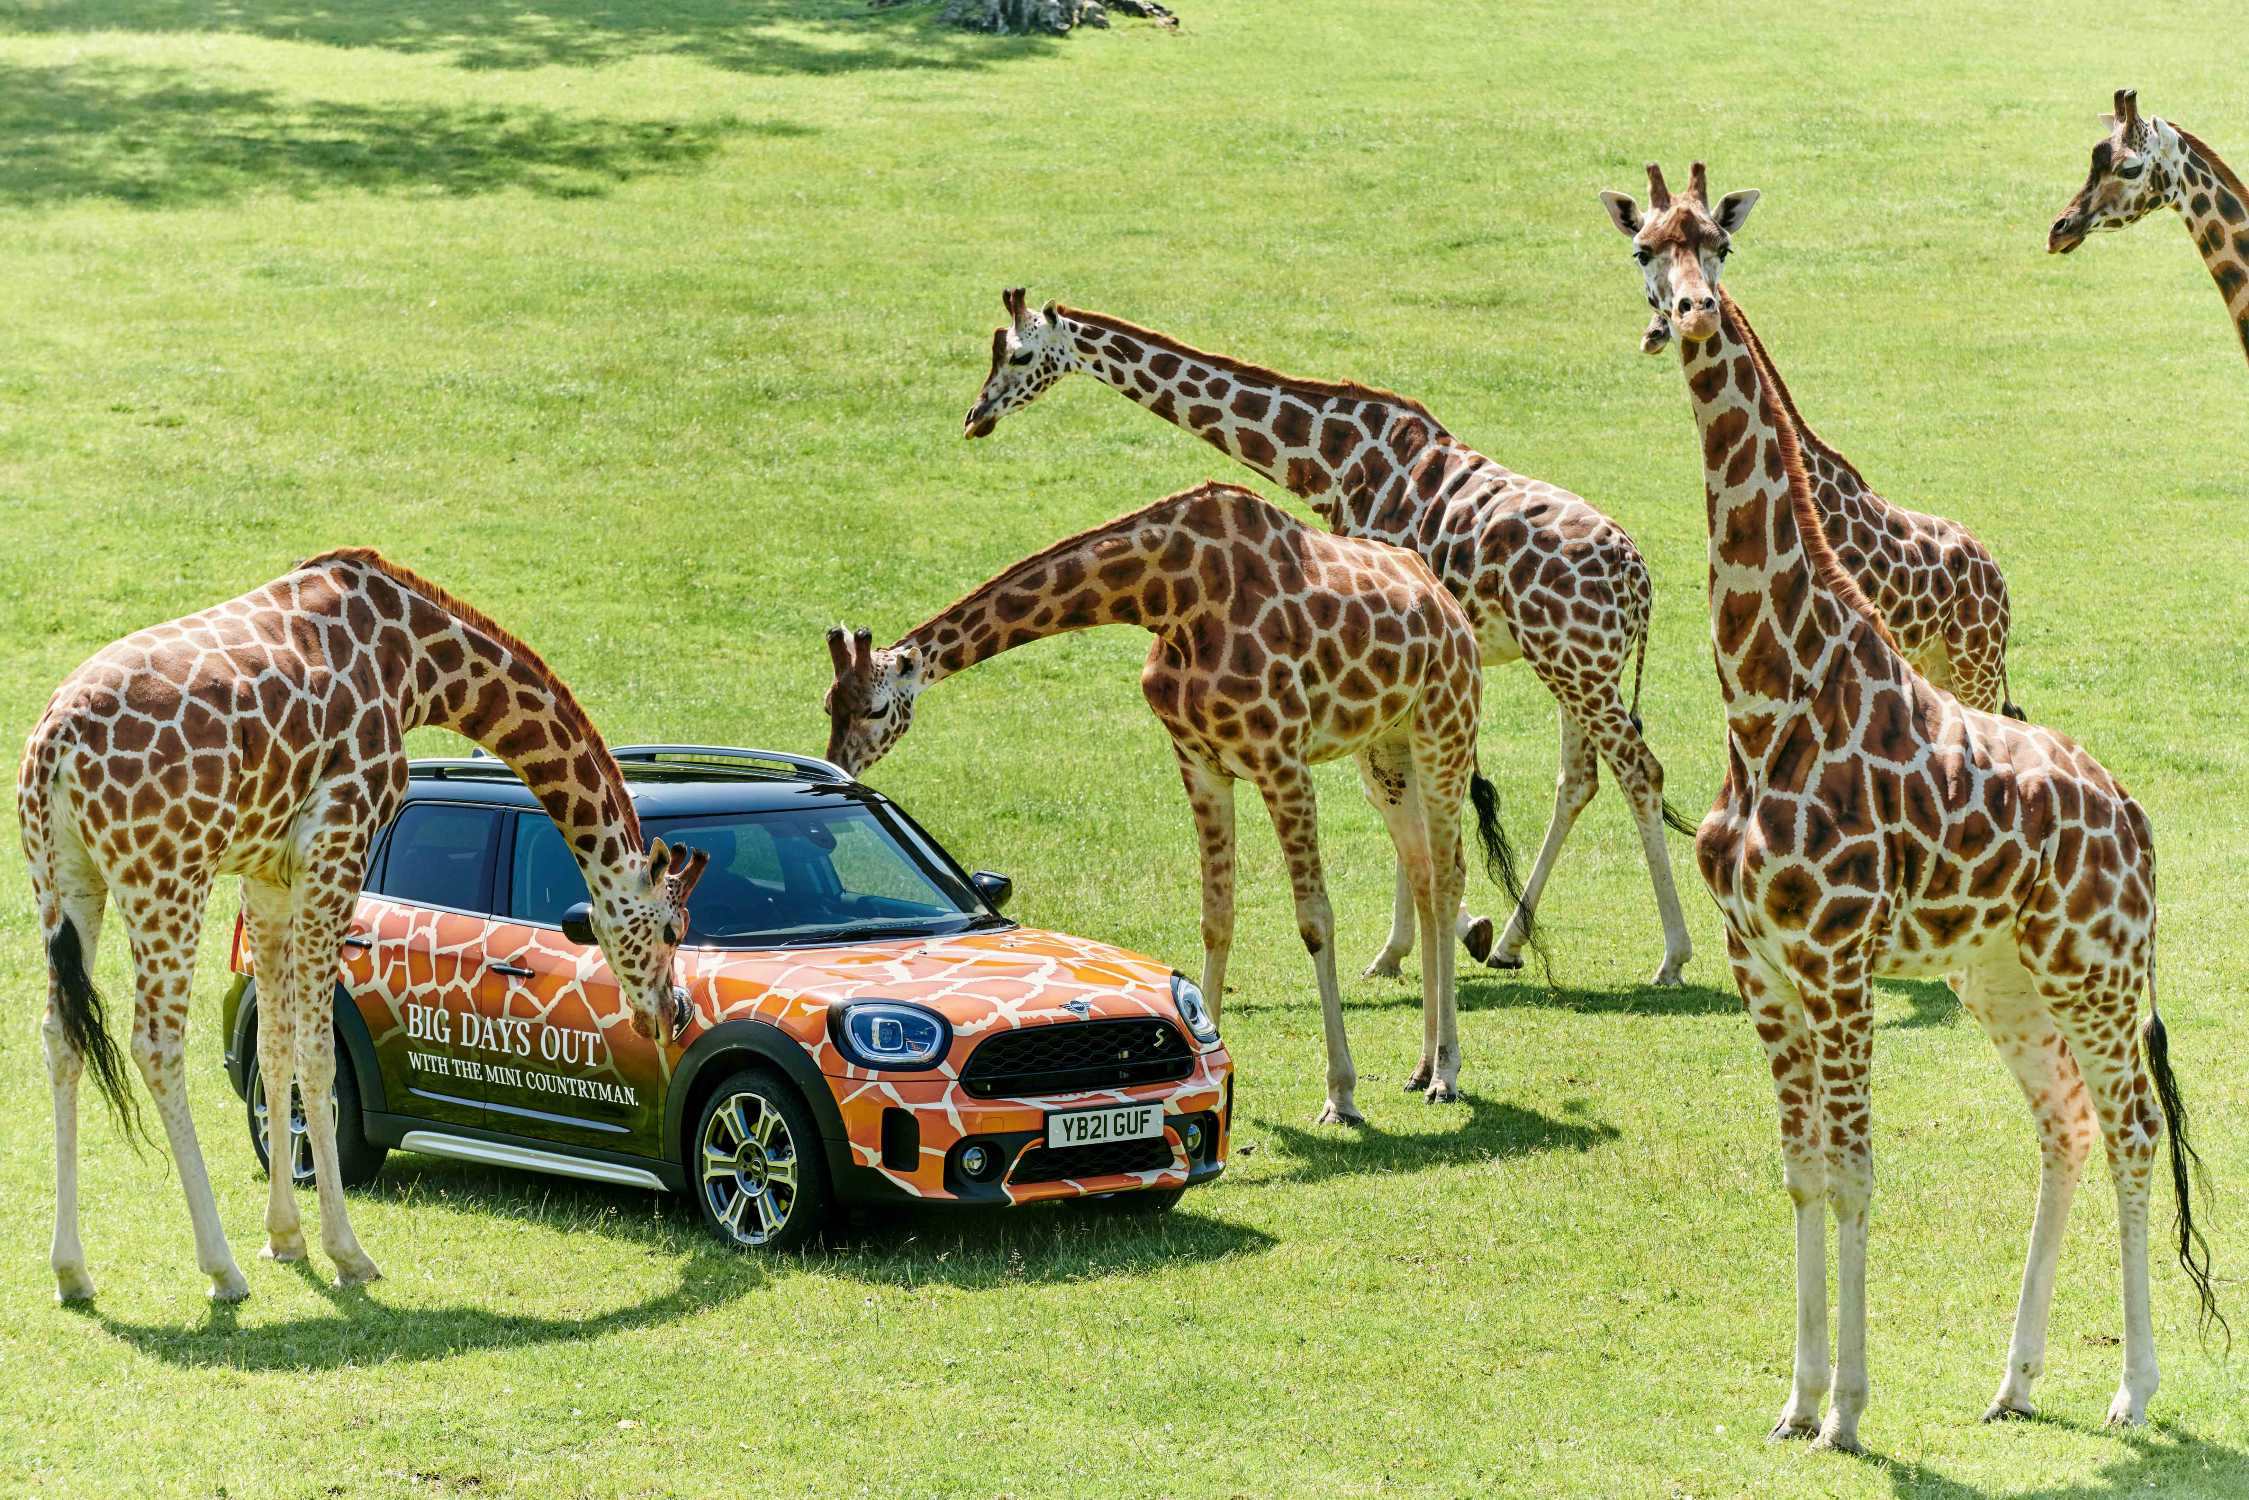 longleat safari car park